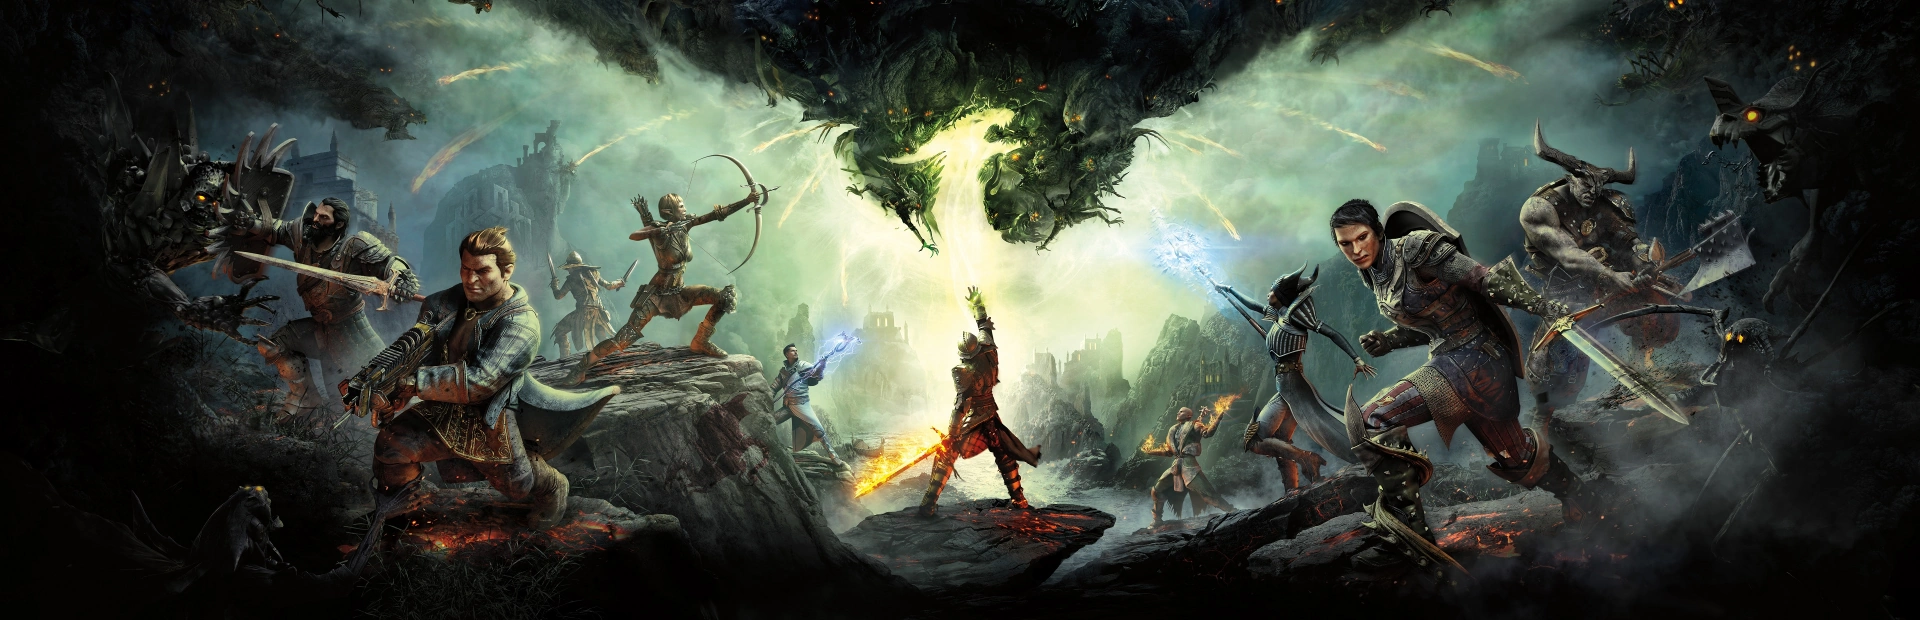 دانلود بازی Dragon Age Inquisition برای PC | گیمباتو